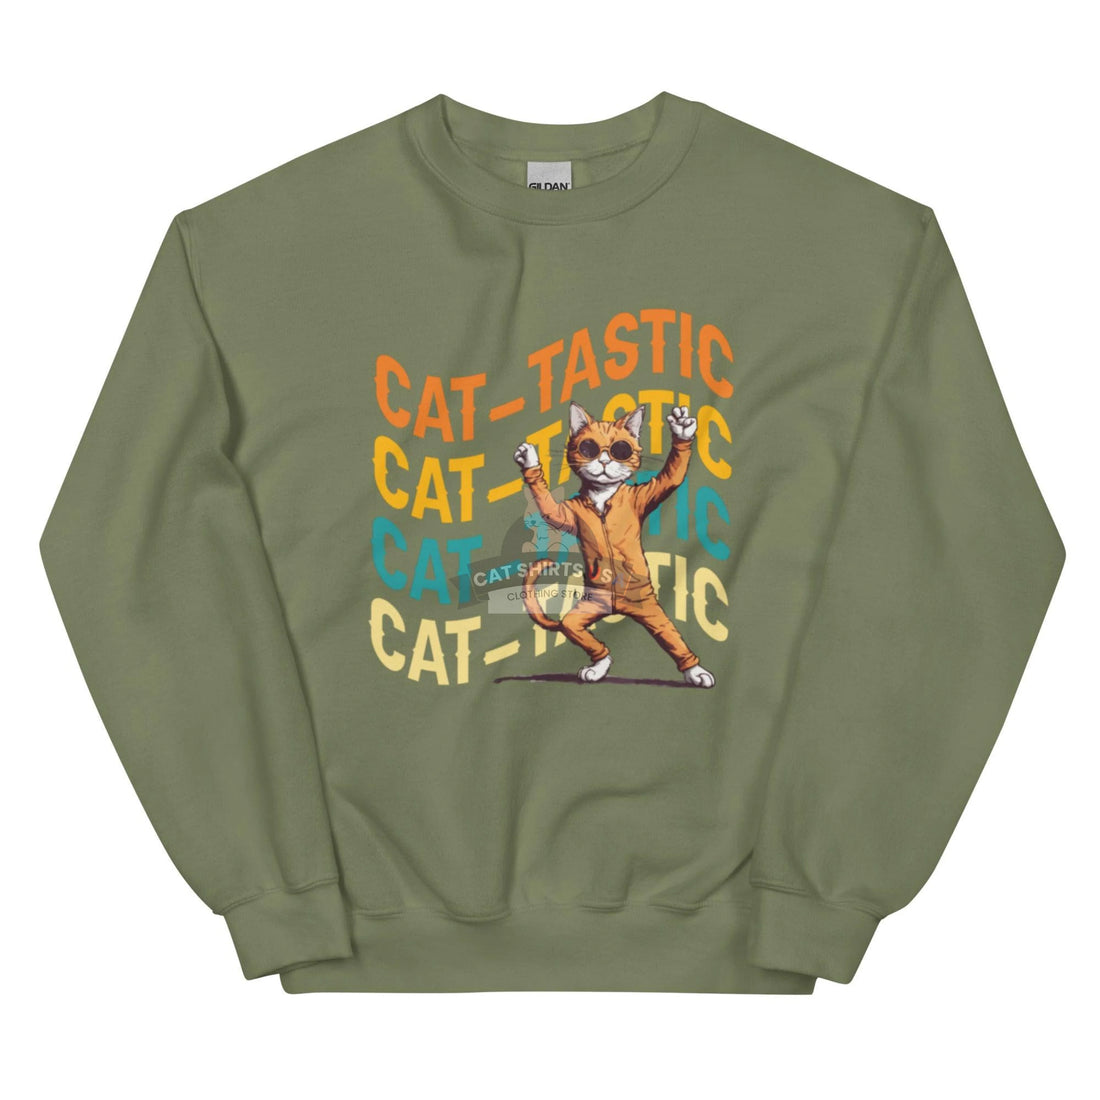 Cat-tastic Cat Sweatshirt - Cat Shirts USA